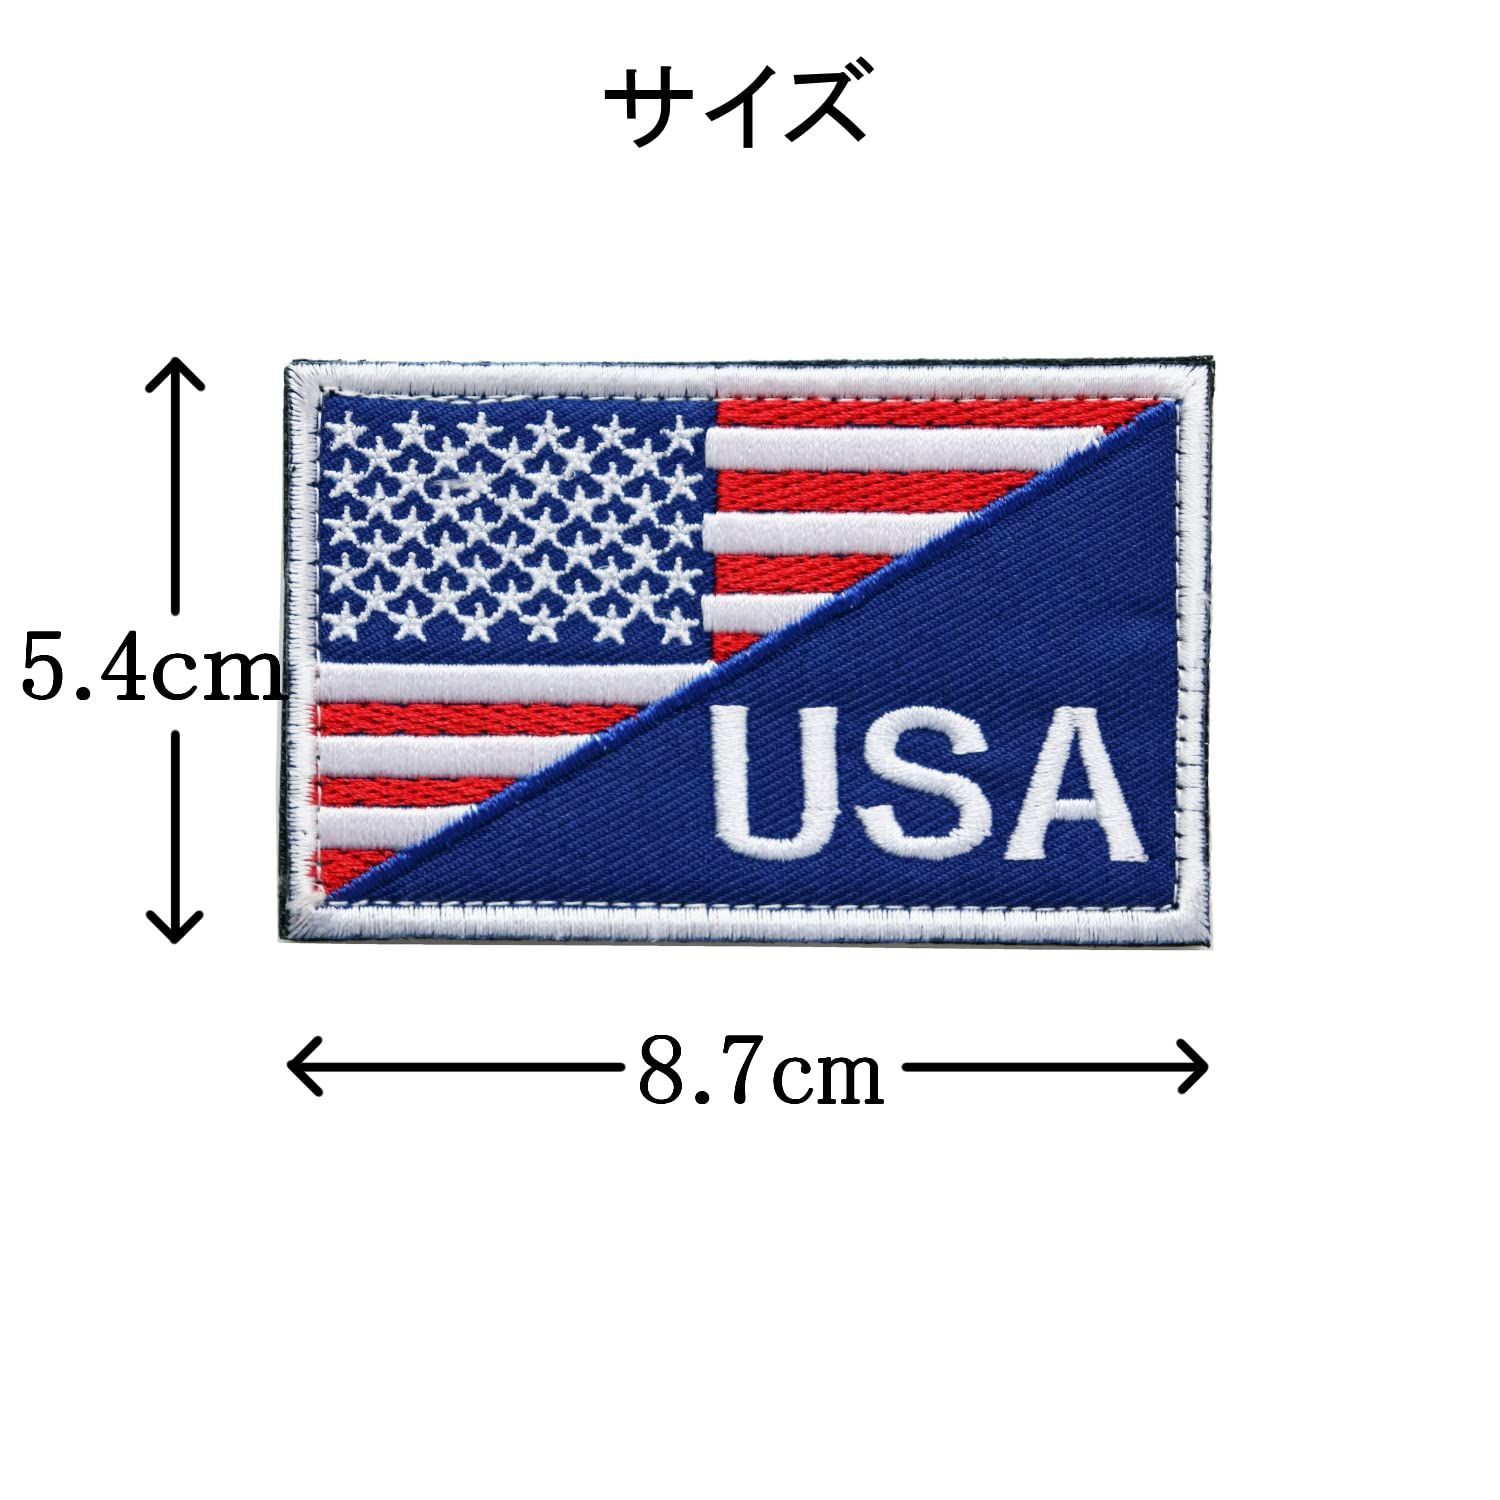 人気ブランド多数対象 ベルクロ パッチ ワッペン マジックテープ 刺繍 アメリカ国旗 サバゲー 星条旗